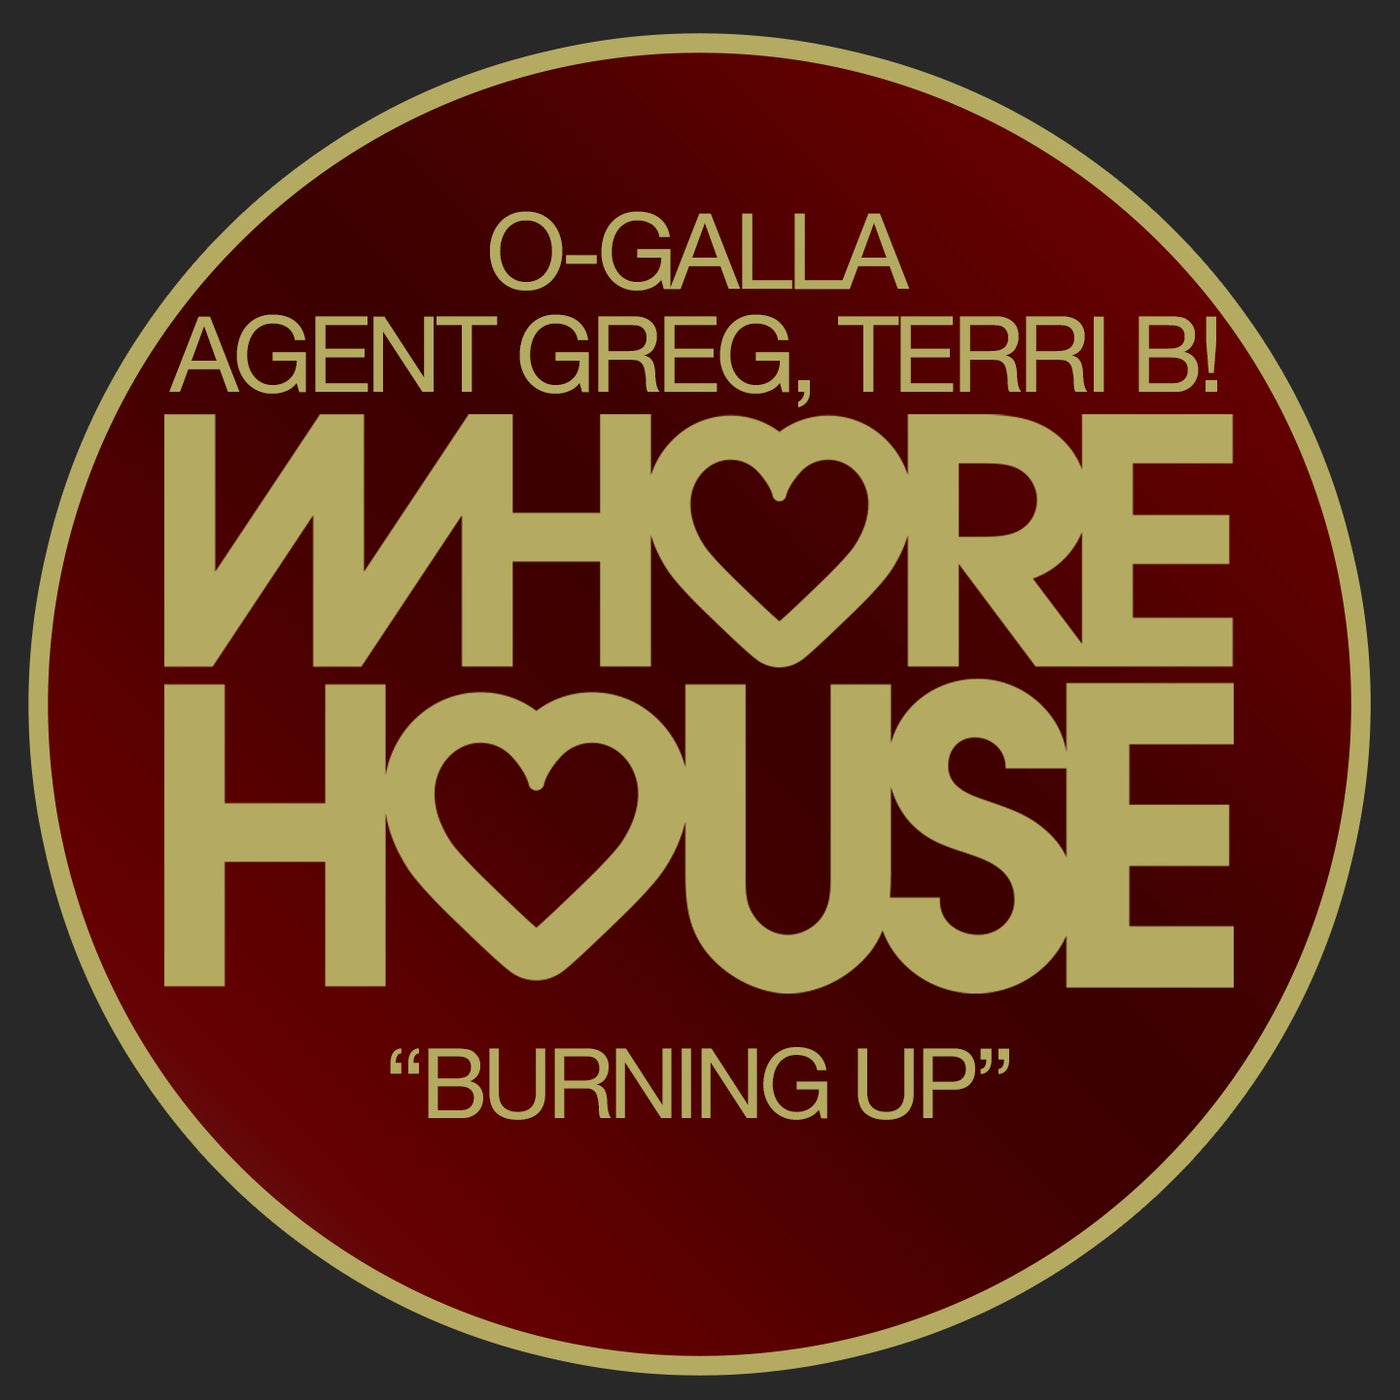 Agent Greg, Terri B!, O-Galla - Burning Up (Original Mix)